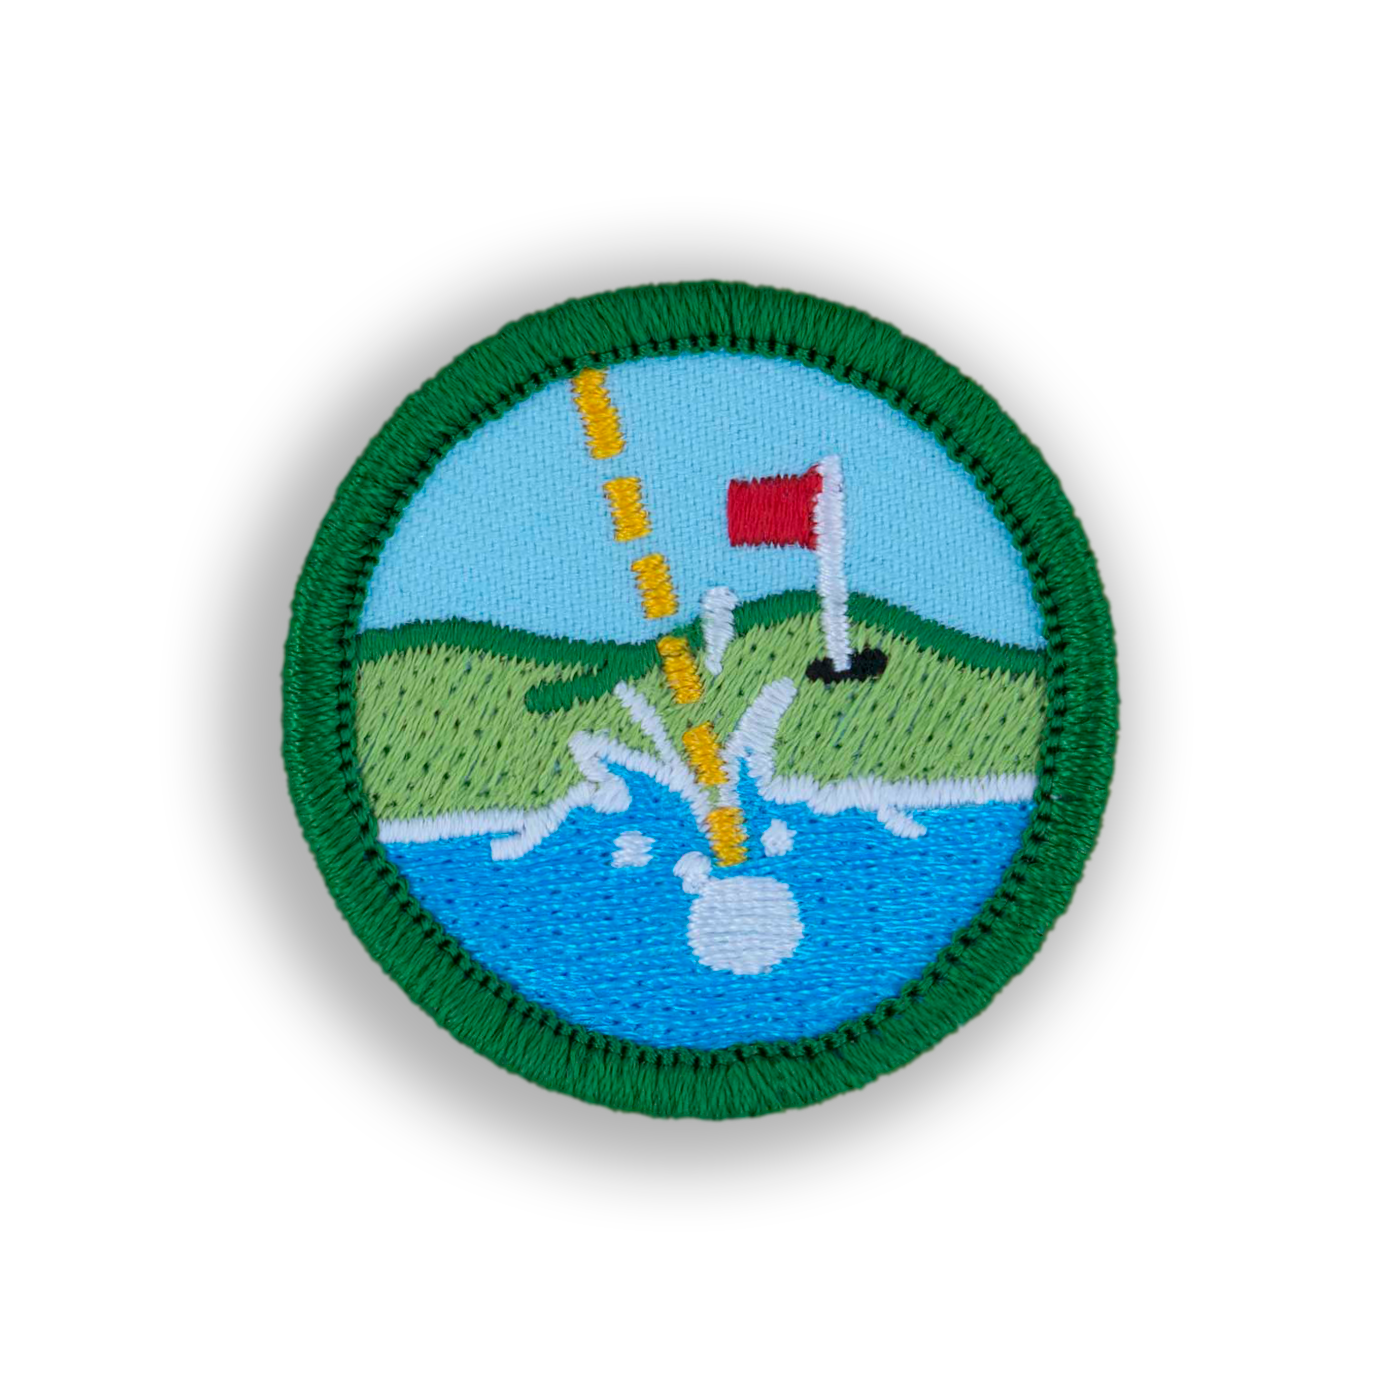 Water Hazard Patch | Demerit Wear - Fake Merit Badges